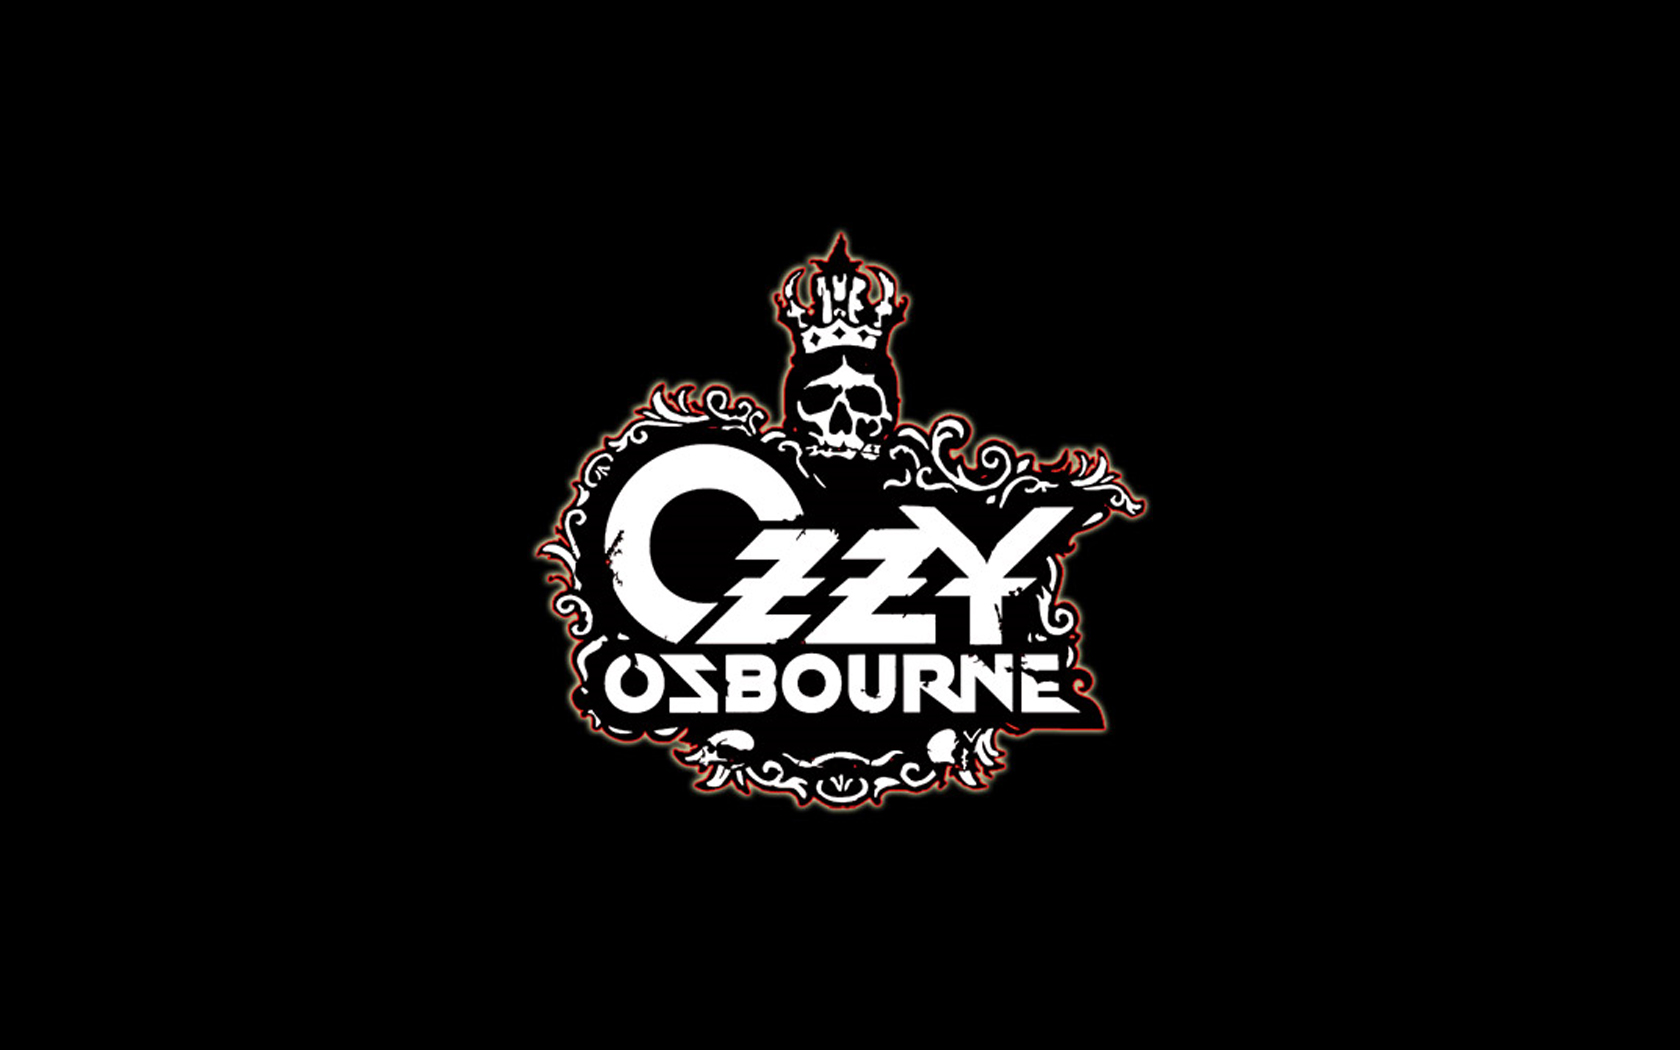 Télécharger des fonds d'écran Ozzy Osbourne HD